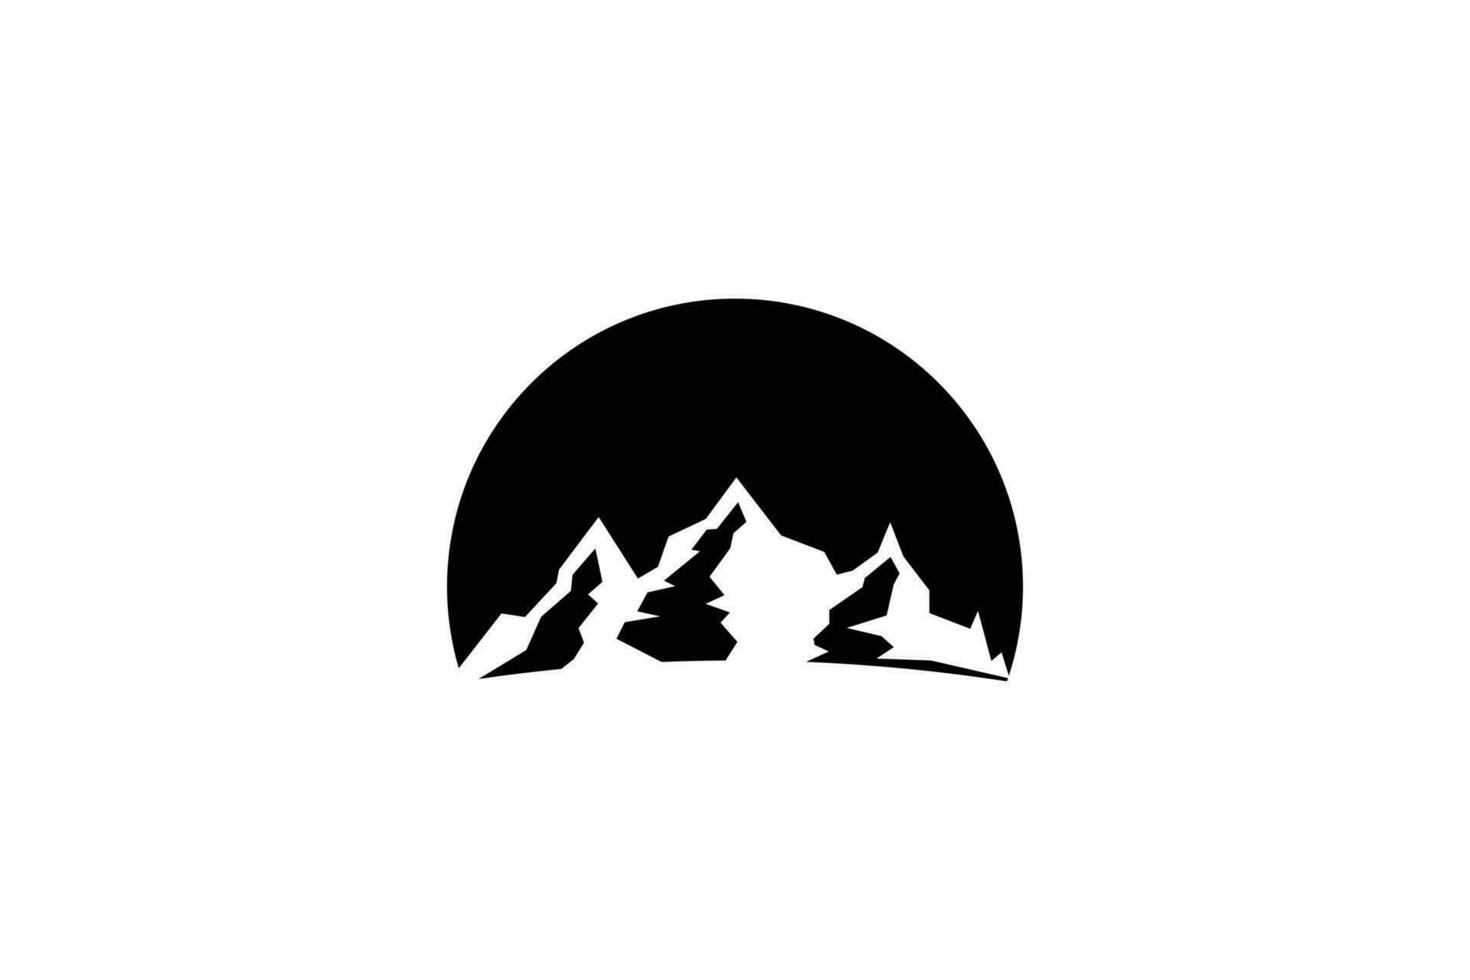 Berg Logo Design mit draussen und Abenteuer Konzept vektor